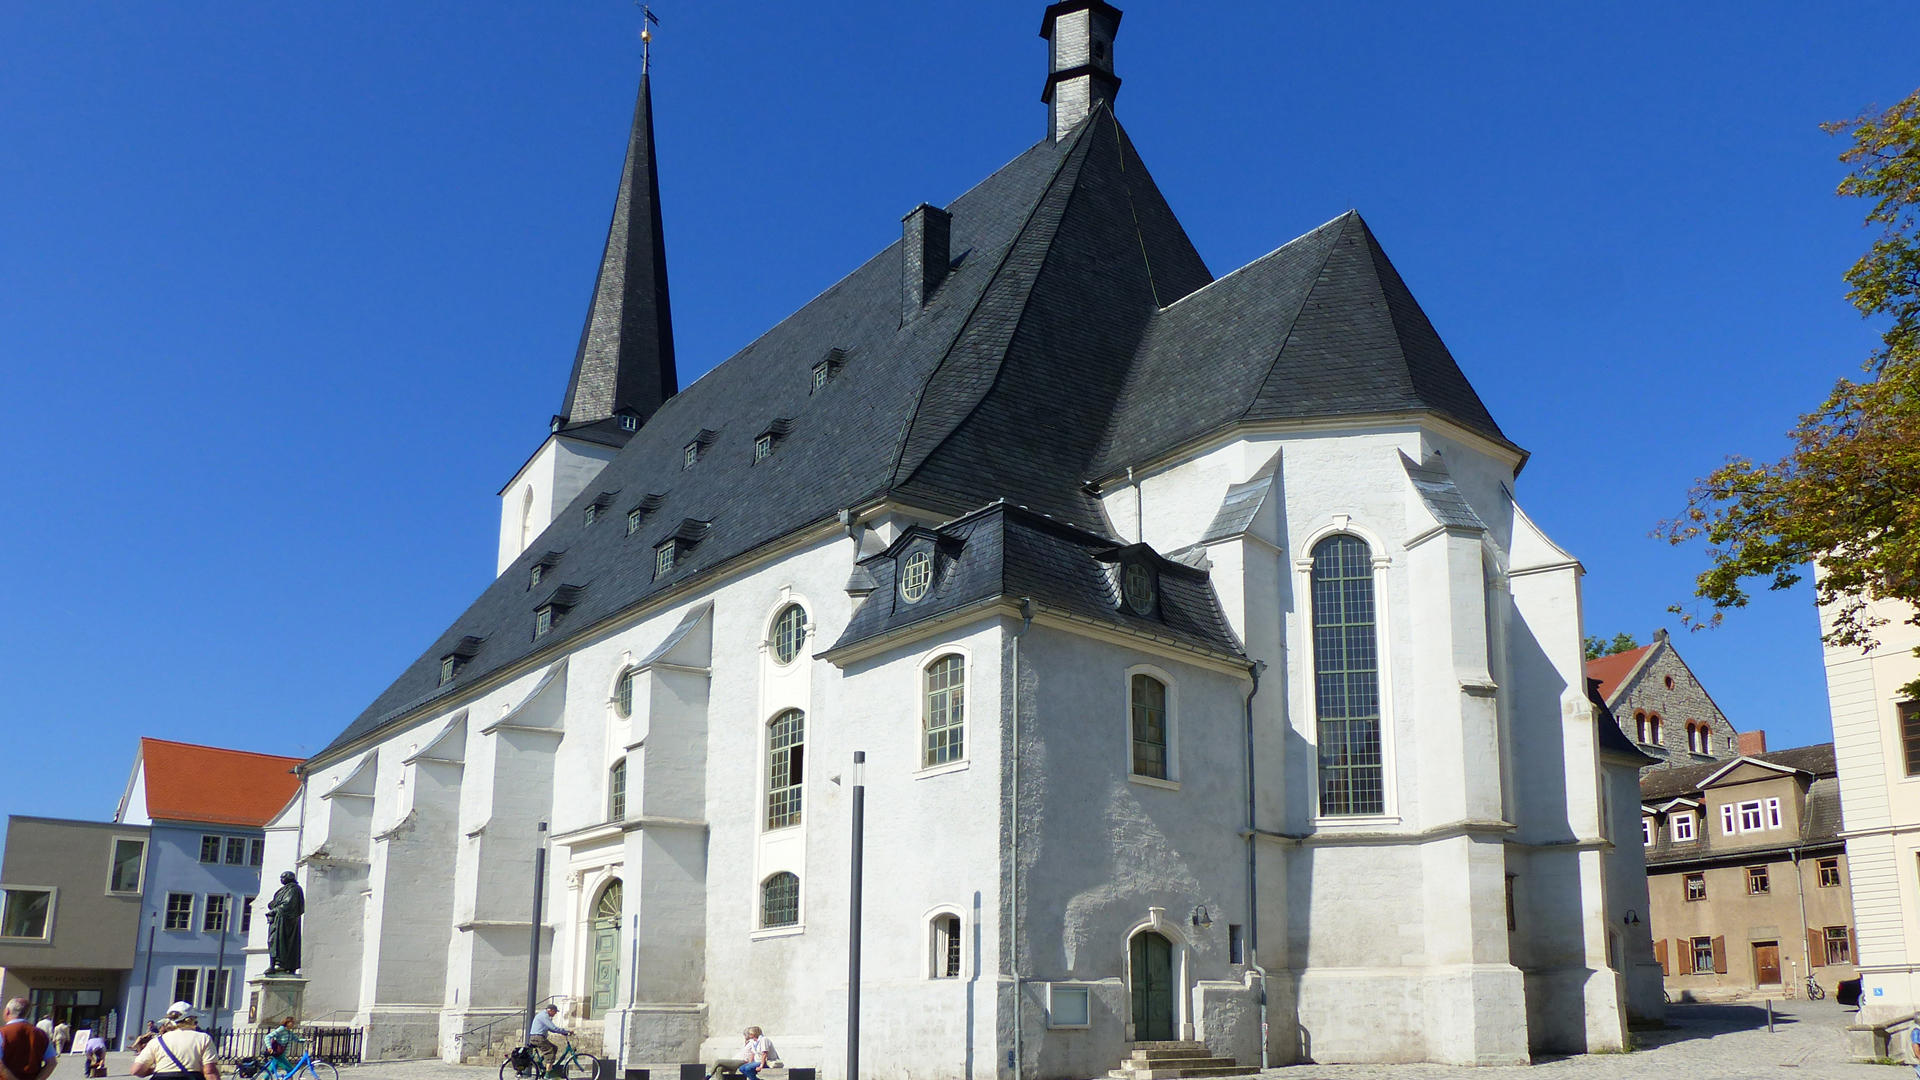 Platz eins: St. Peter und Paul Weimar. Die Kirche wurde 1498 bis 1500 erbaut und gehört zum UNESCO-Welterbe. Der Reformator Martin Luther predigte dort in den Jahren 1518 bis 1540, wenn er in Weimar zu Gast war.